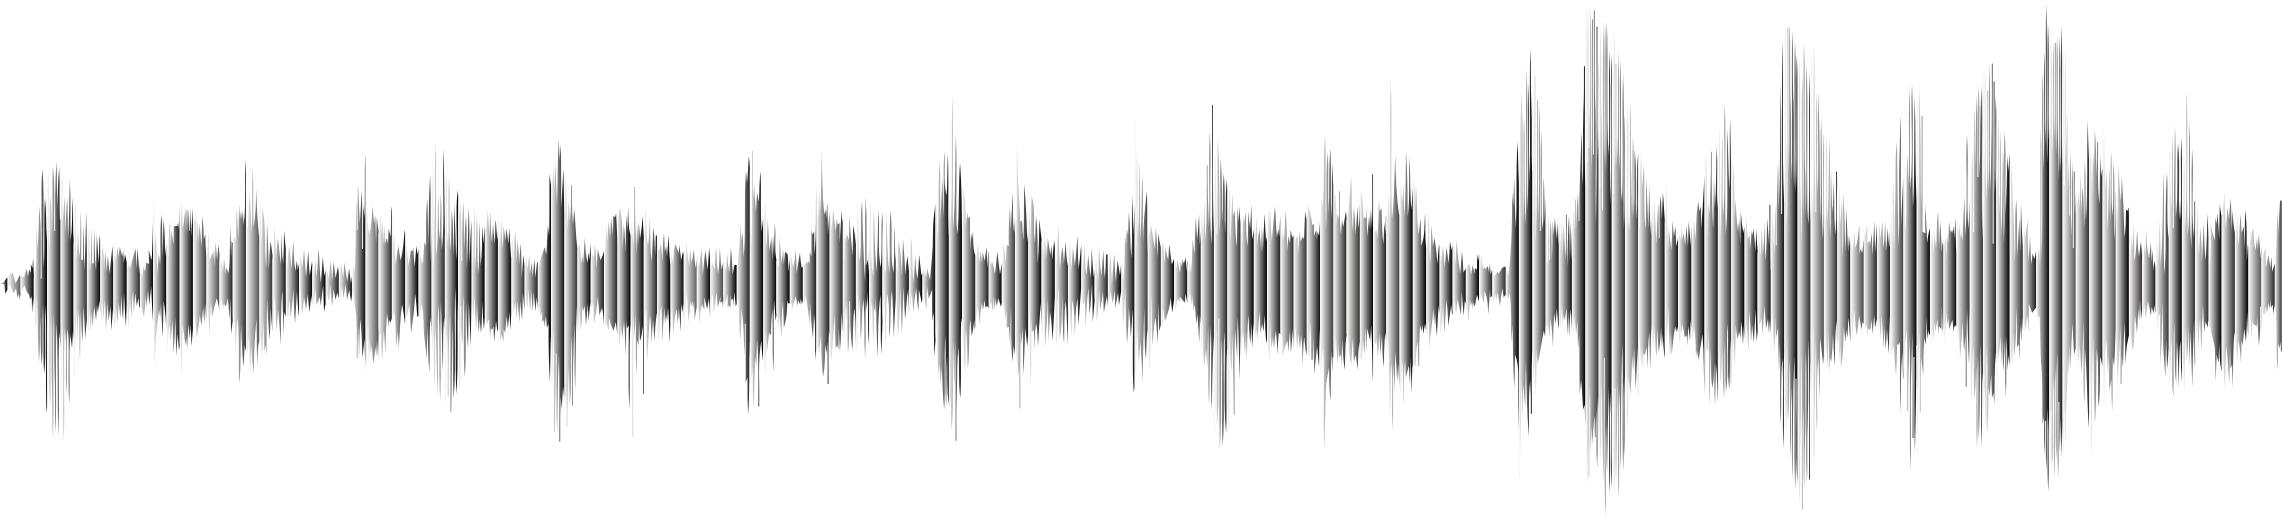 A Sound Wave On A Black Background